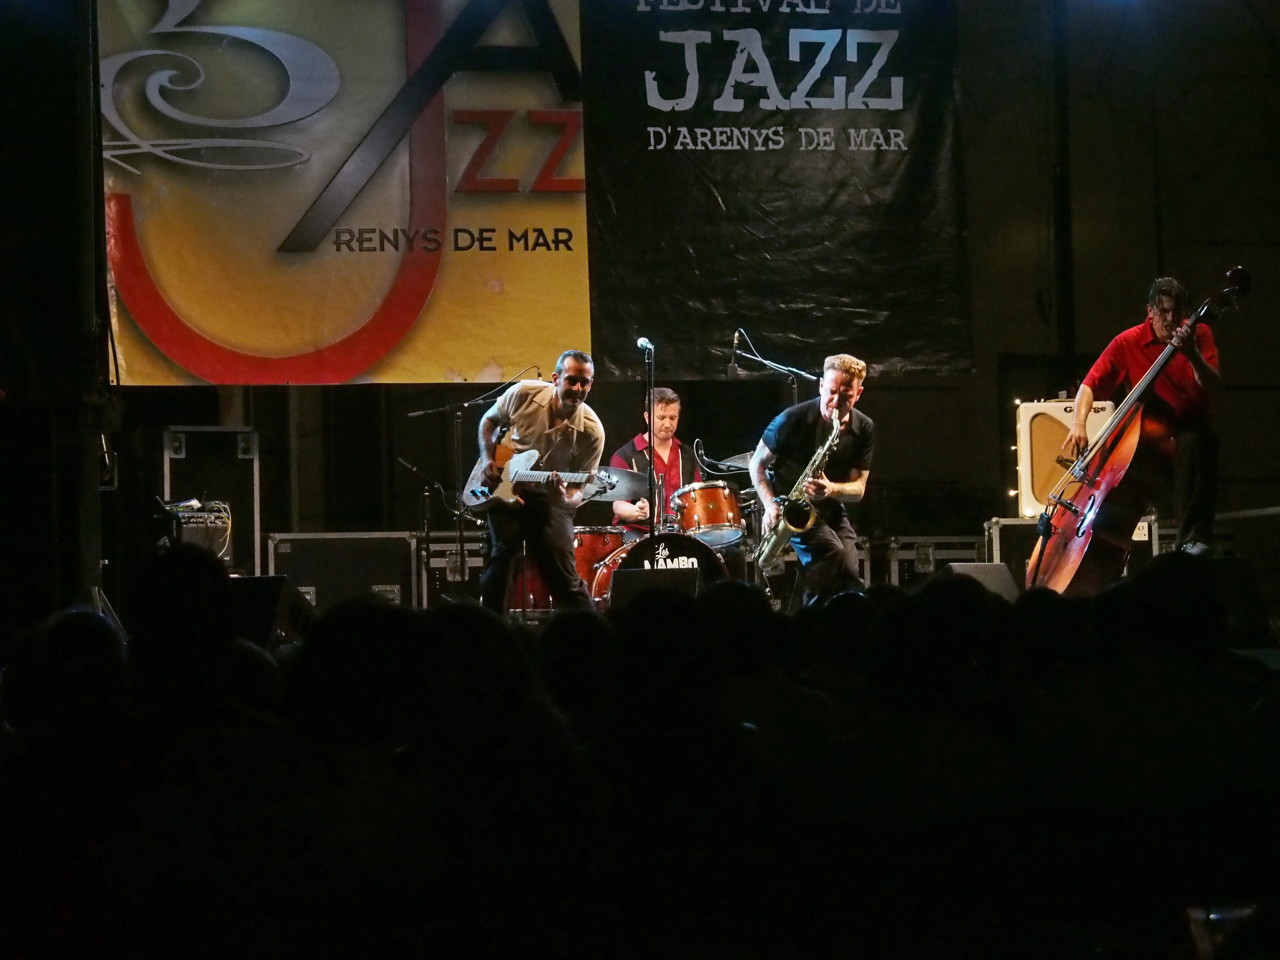 Imatges del 21è Festival de Jazz d'Arenys de Mar - 2012 - Foto 19014862